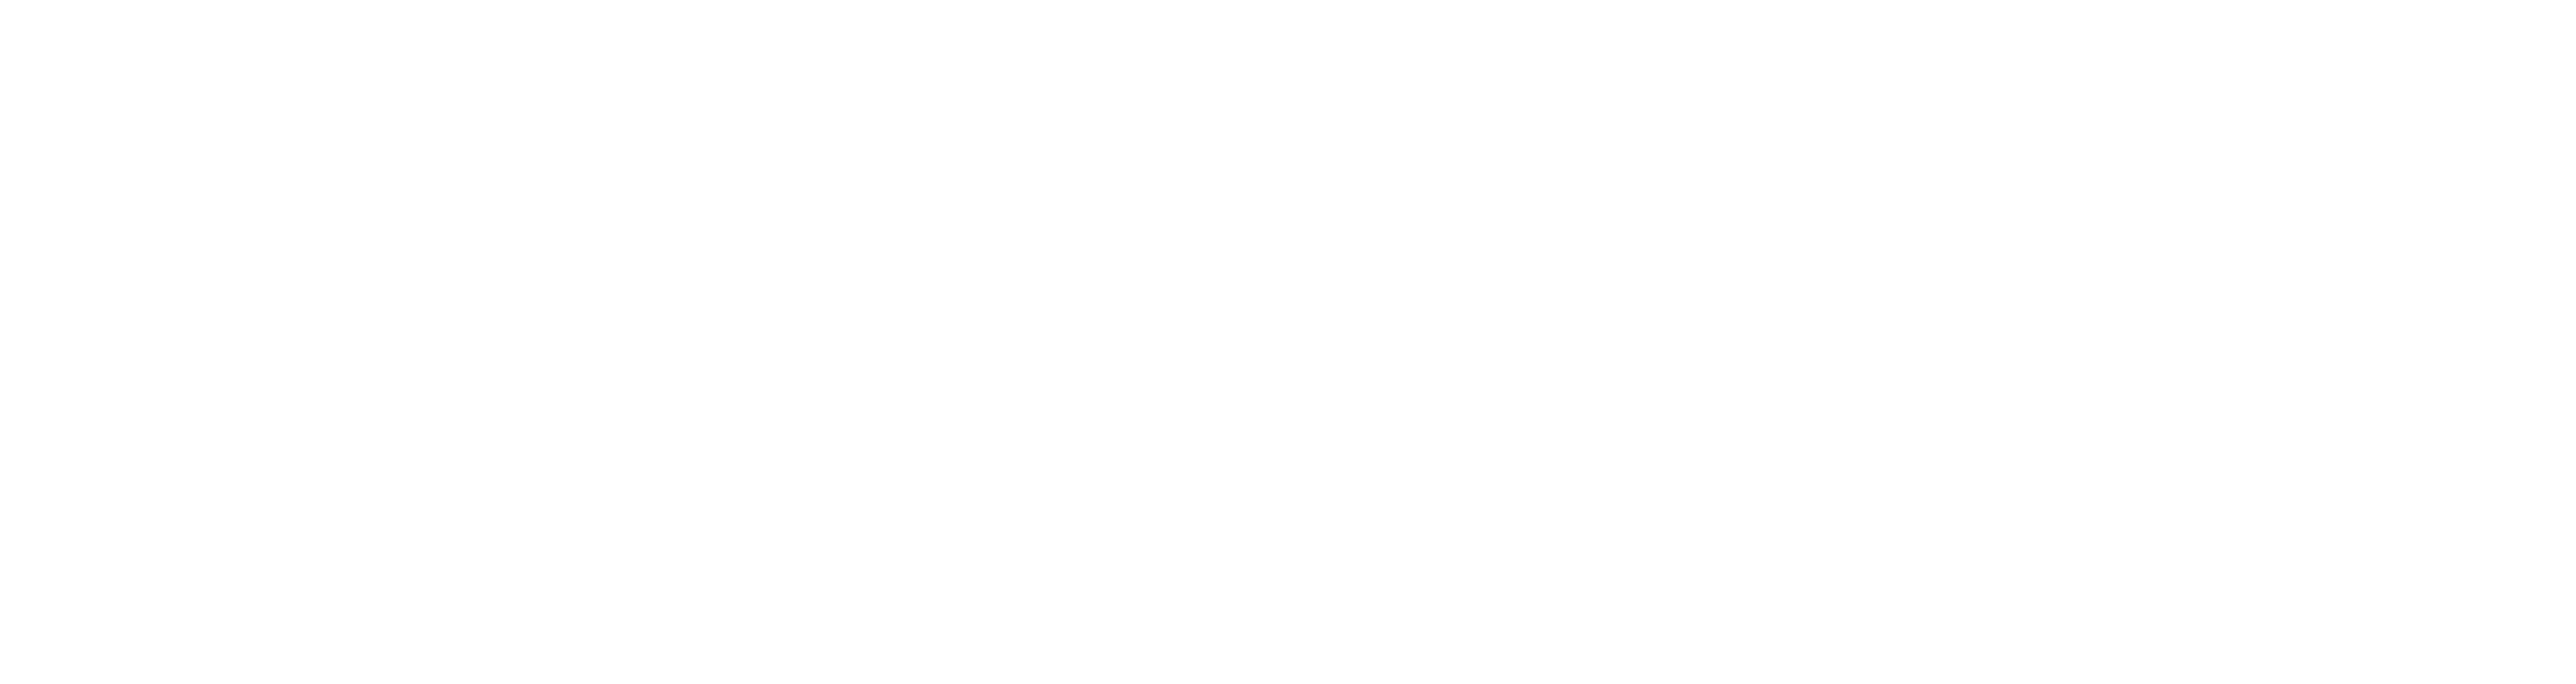 Business Insider logo in white